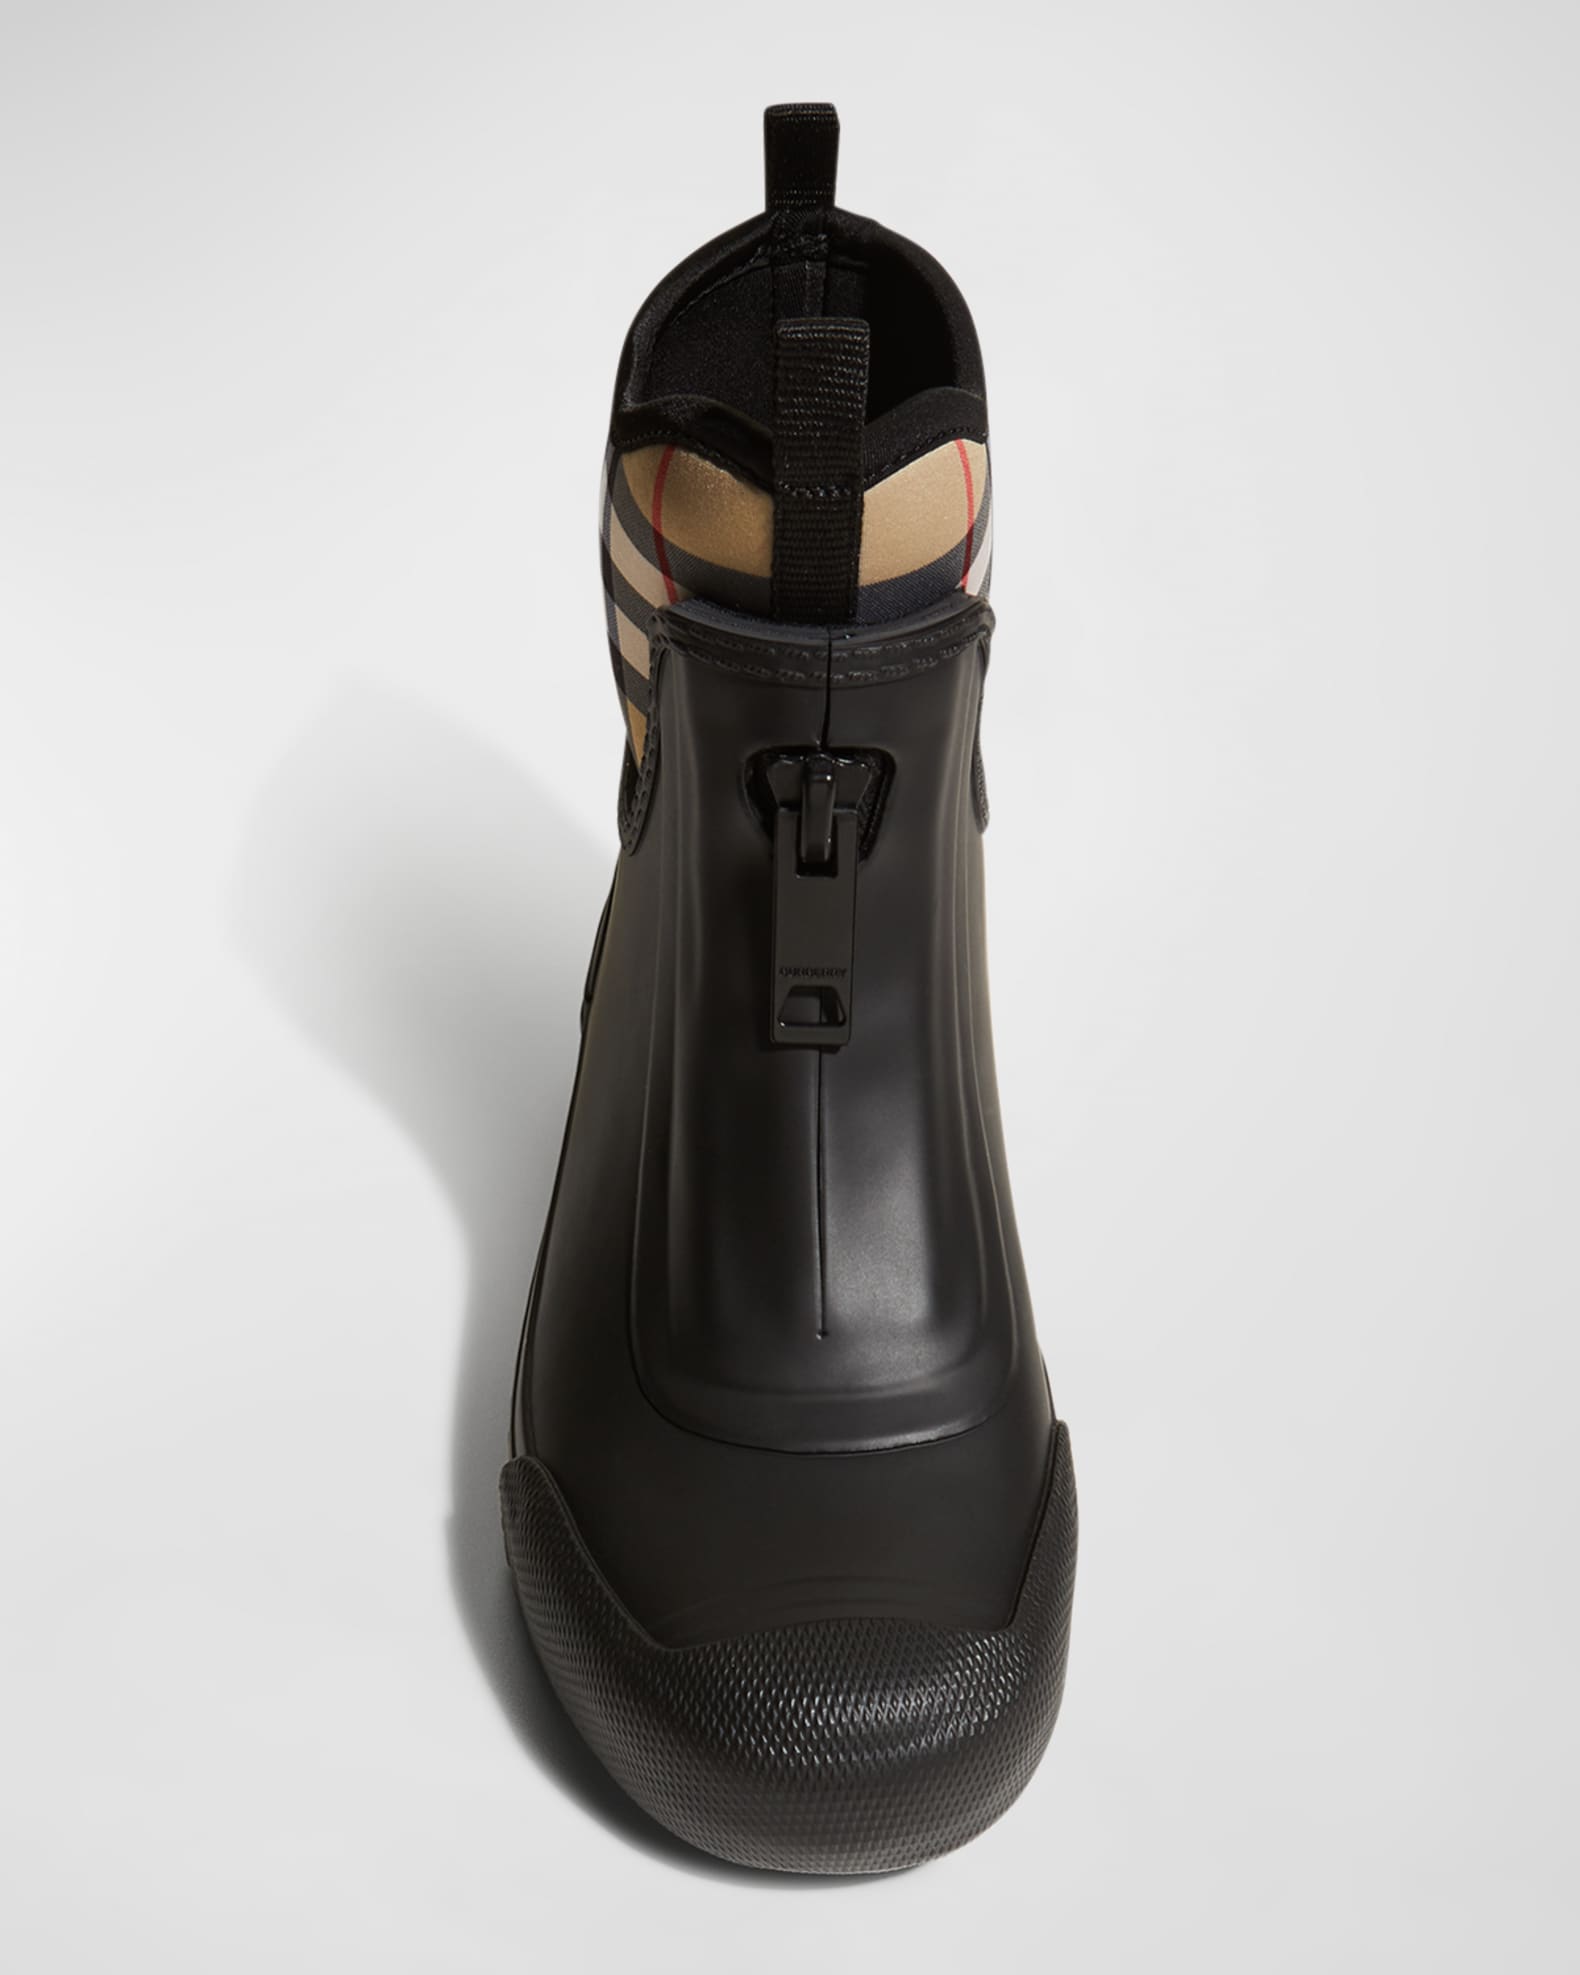 Burberry Super Nova Check Pattern Rain Boots - Neutrals Boots